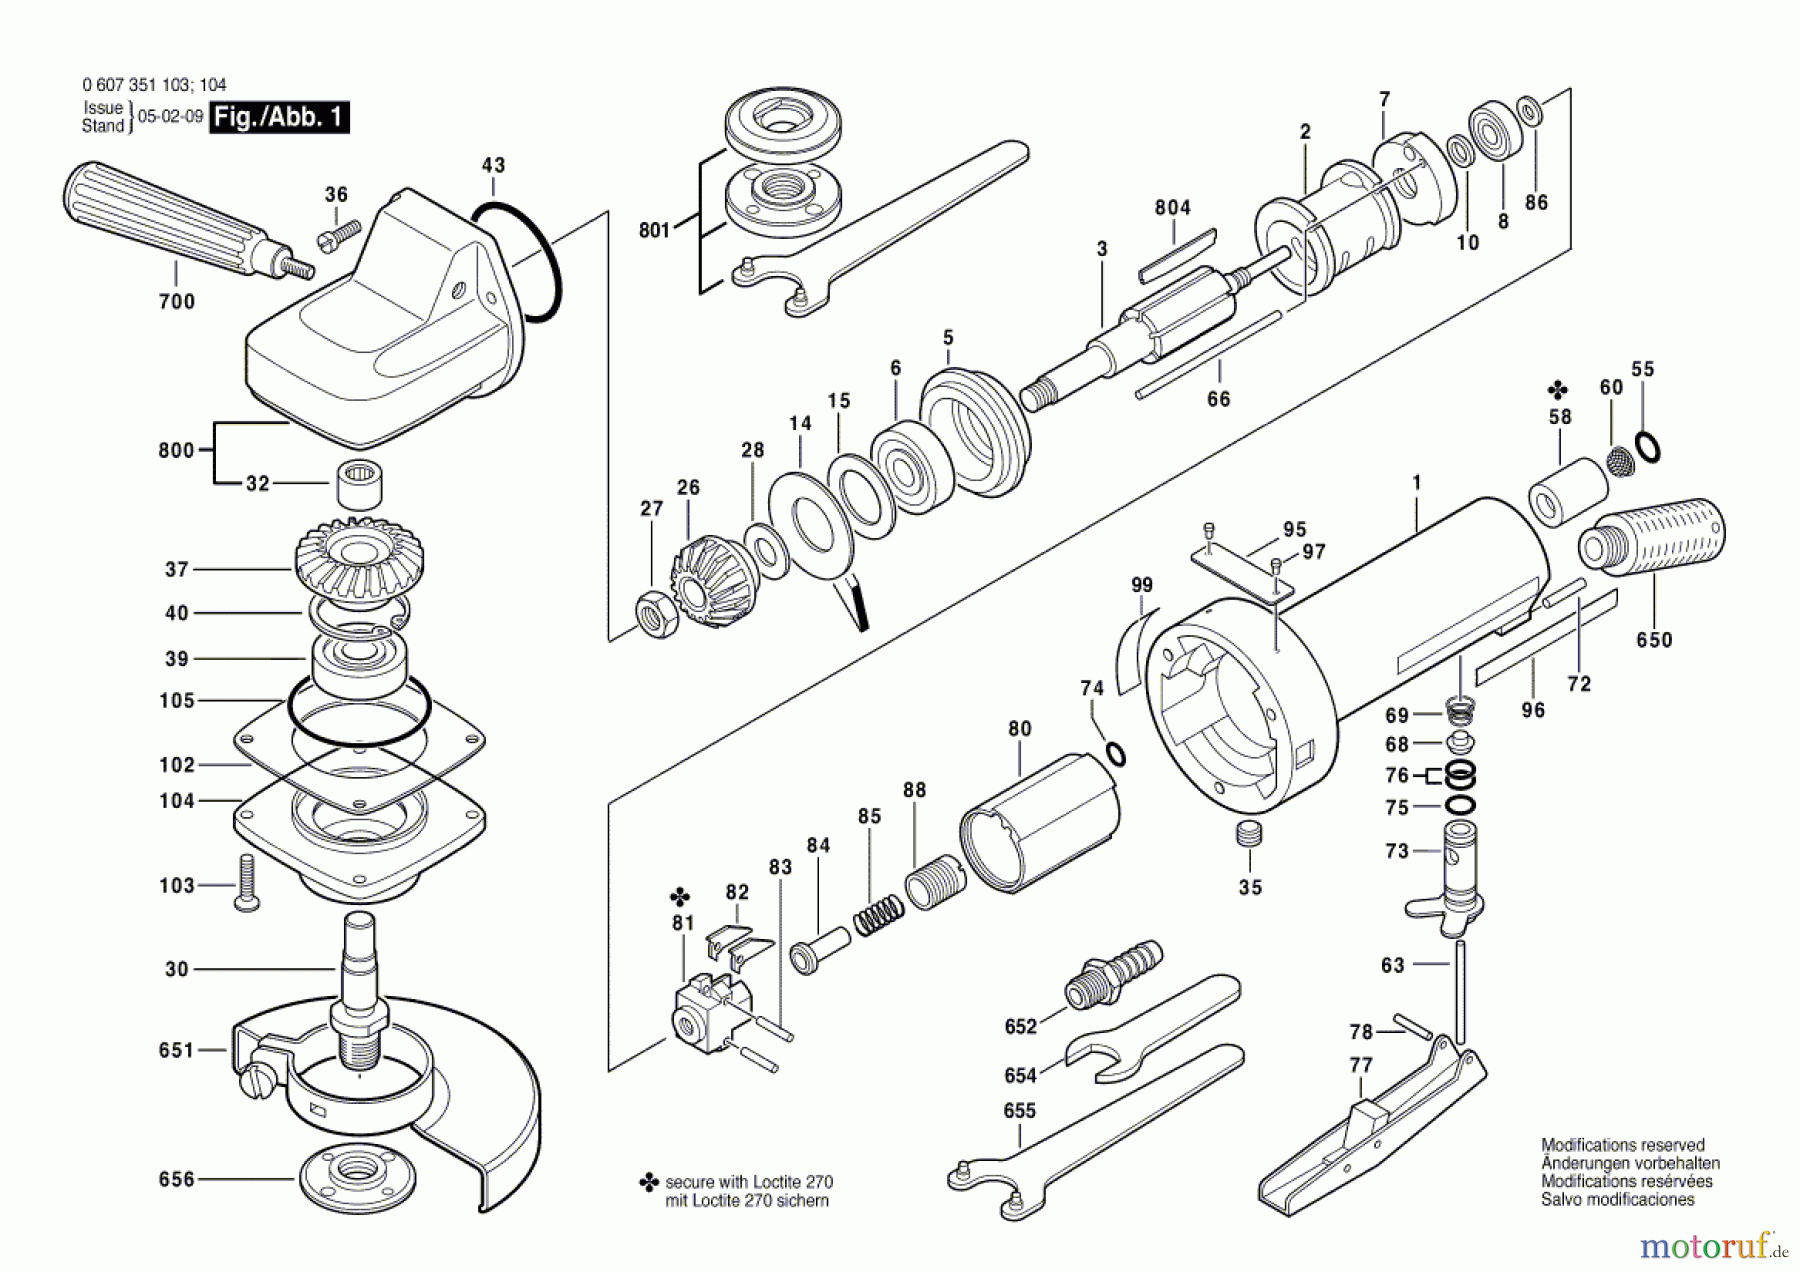  Bosch Werkzeug Winkelschleifer 370 WATT-SERIE Seite 1